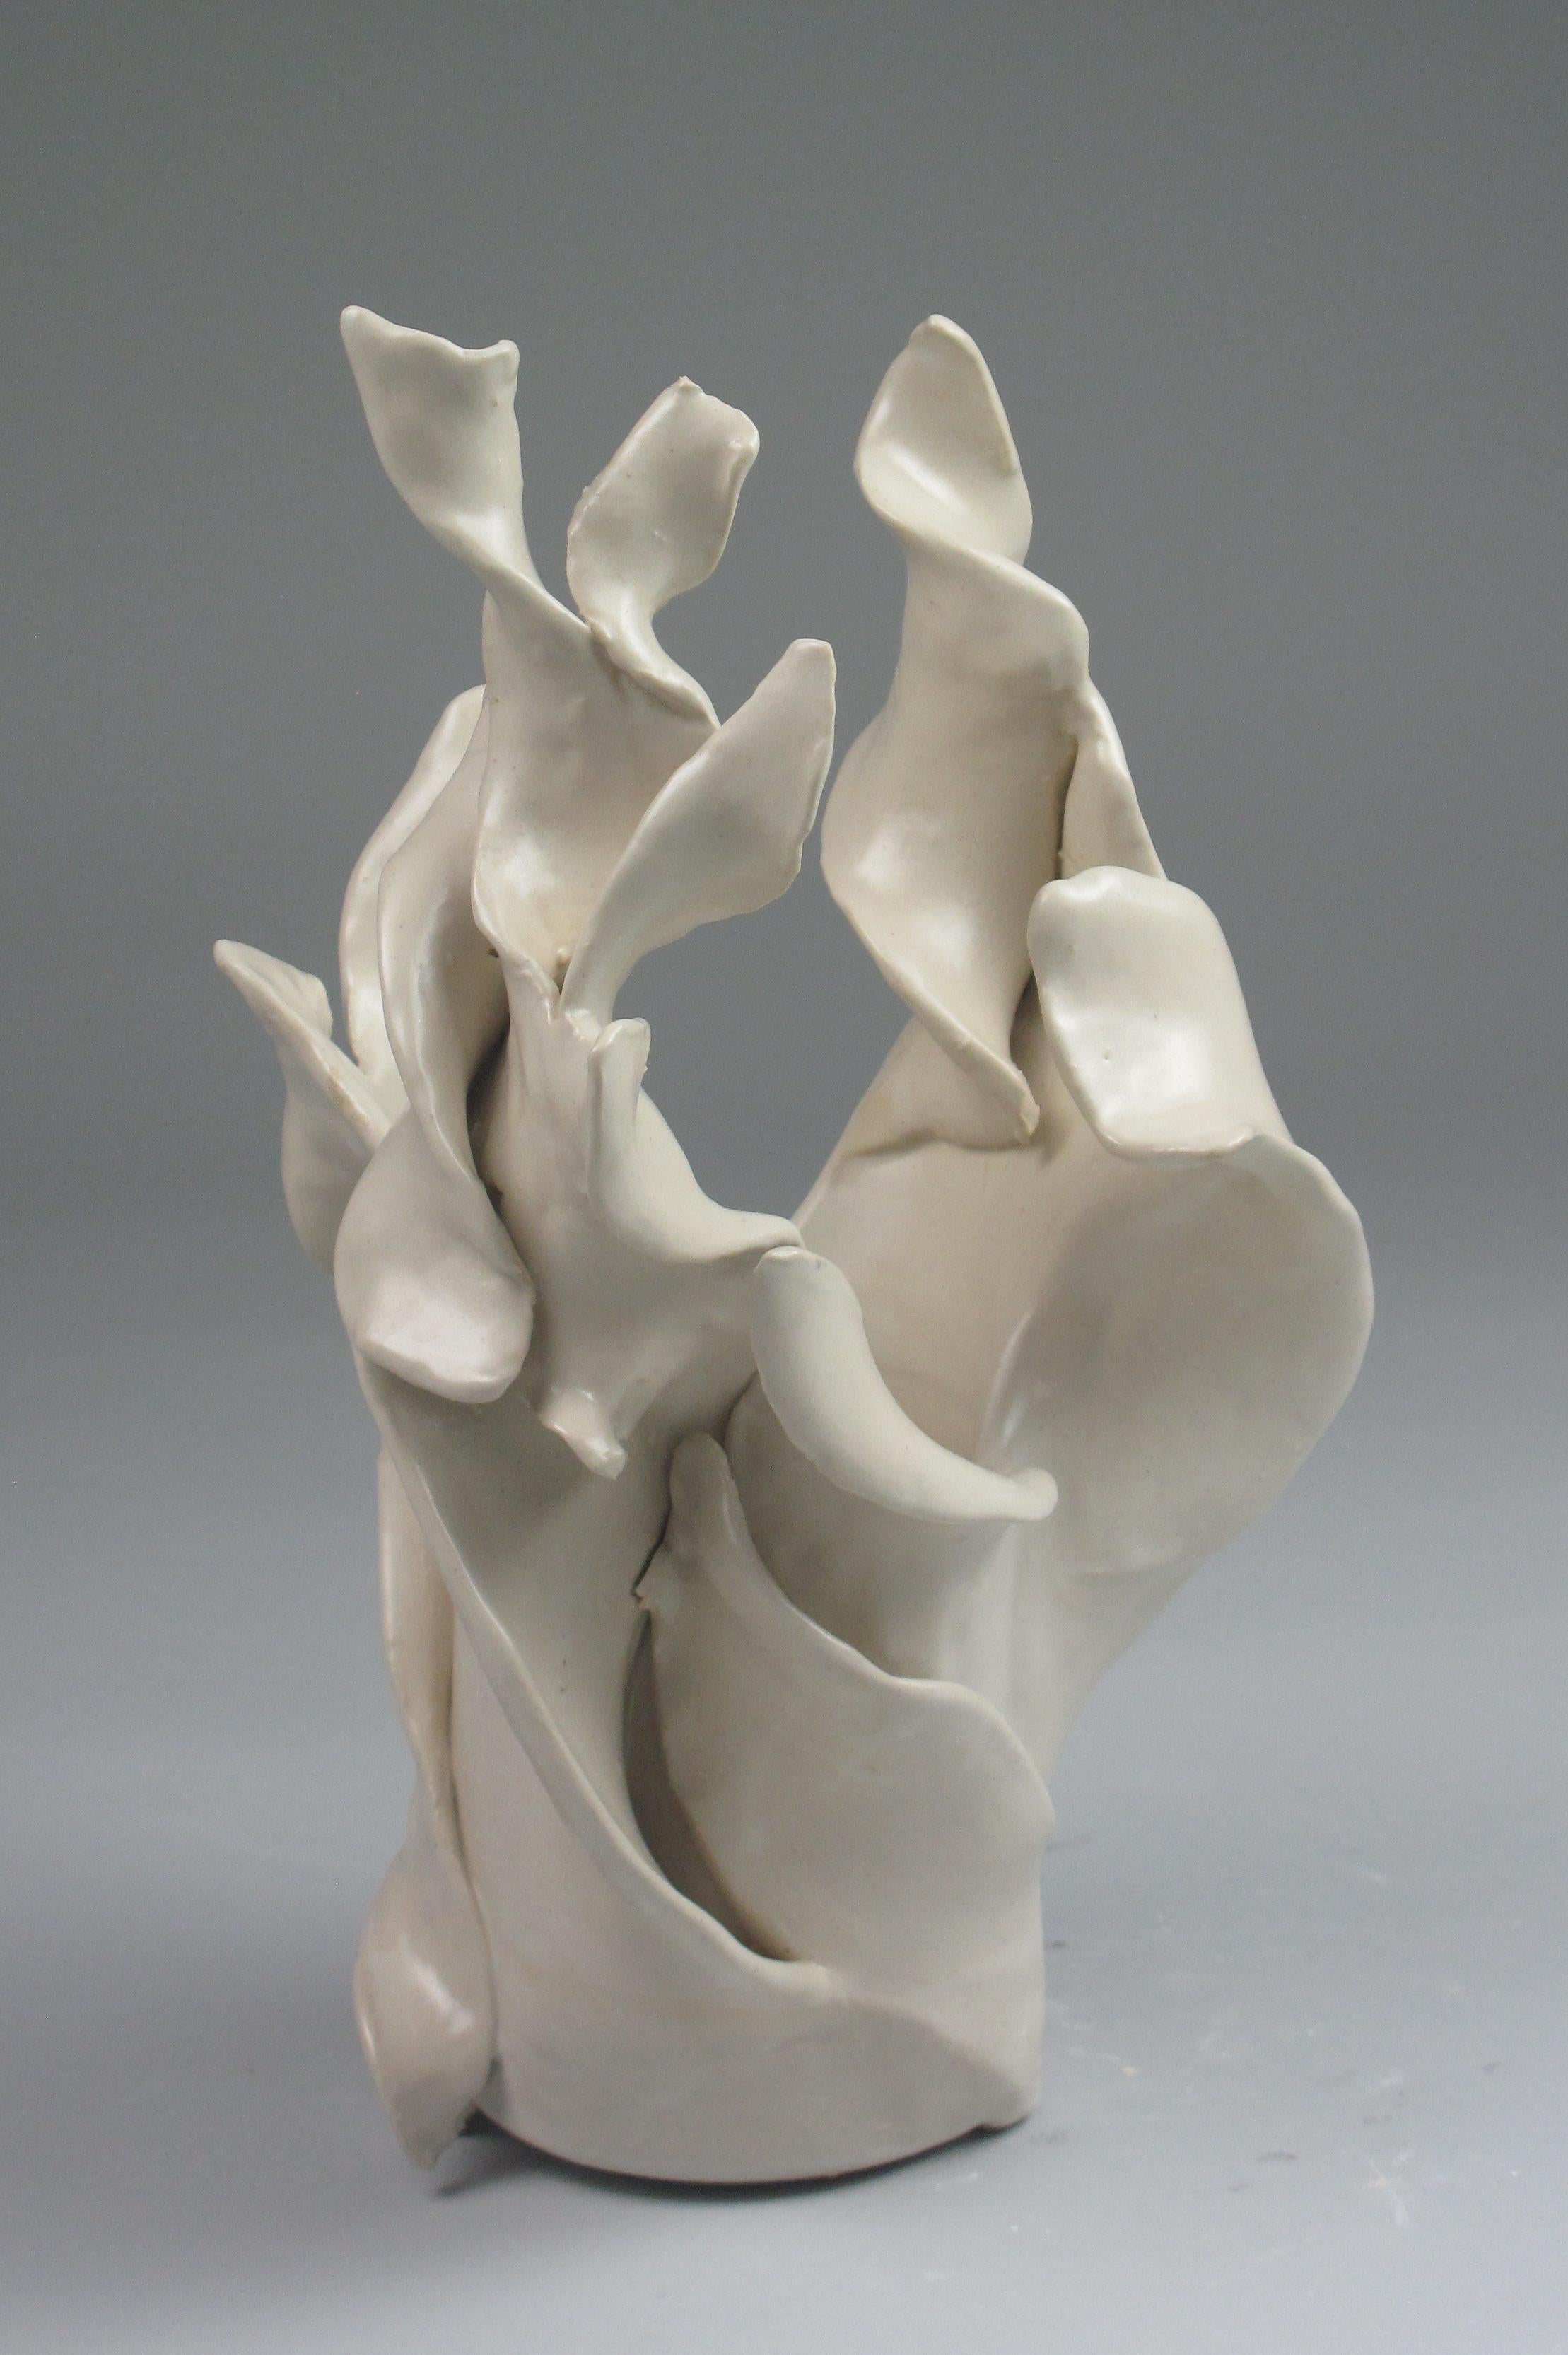 "Spiral Vase", gestural, ceramic, sculpture, white, cream, stoneware - Sculpture by Sara Fine-Wilson